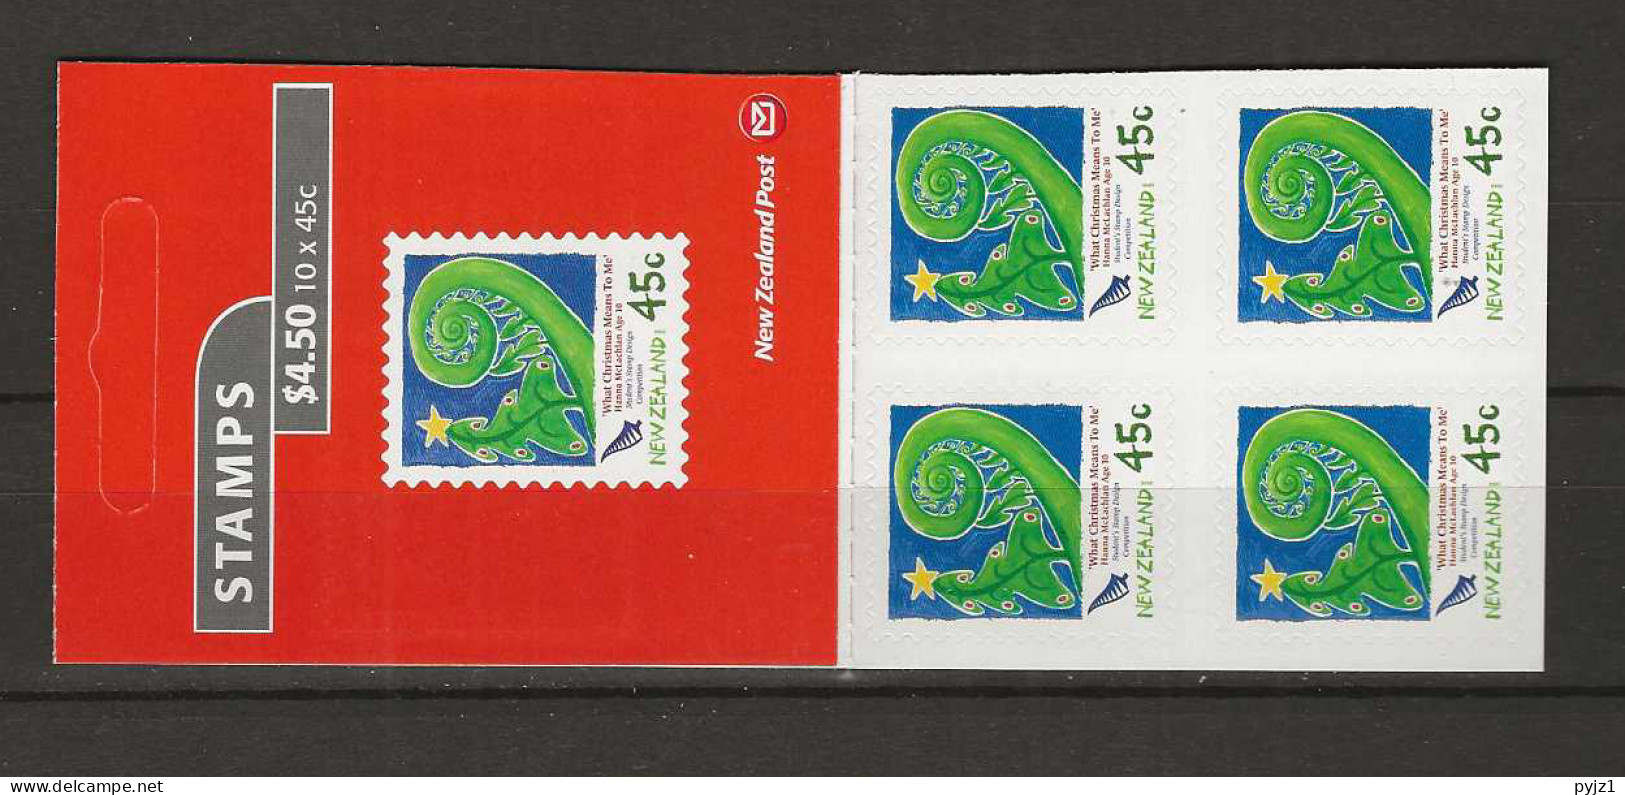 2006 MNH New Zealand Booklet Mi 2375 Postfris** - Postzegelboekjes